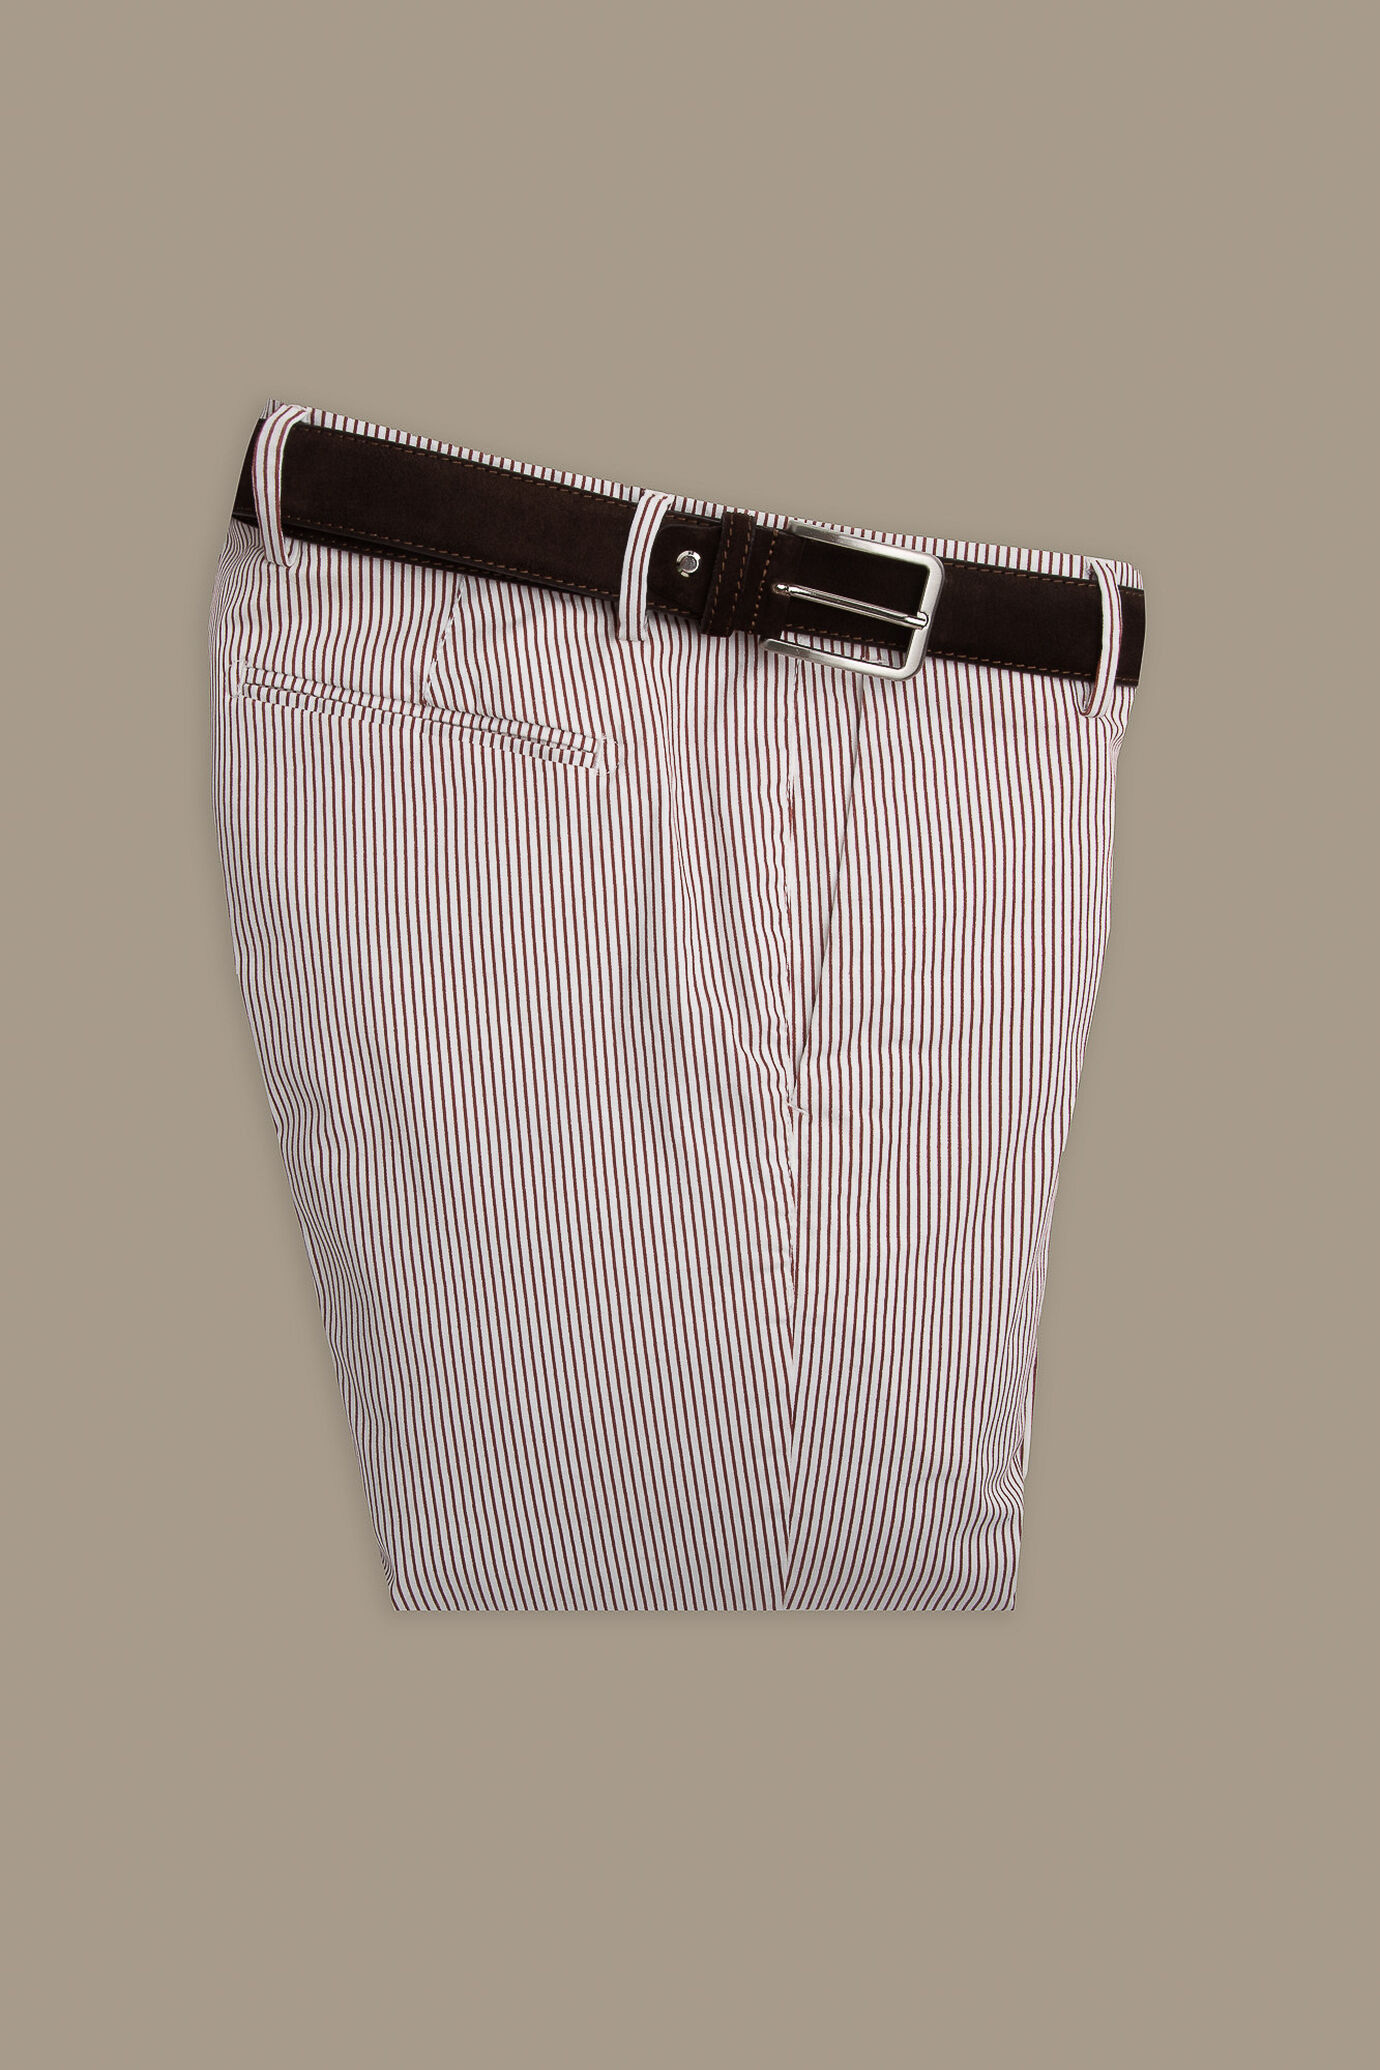 Pantalone uomo bicolore chino twill a righe image number 0